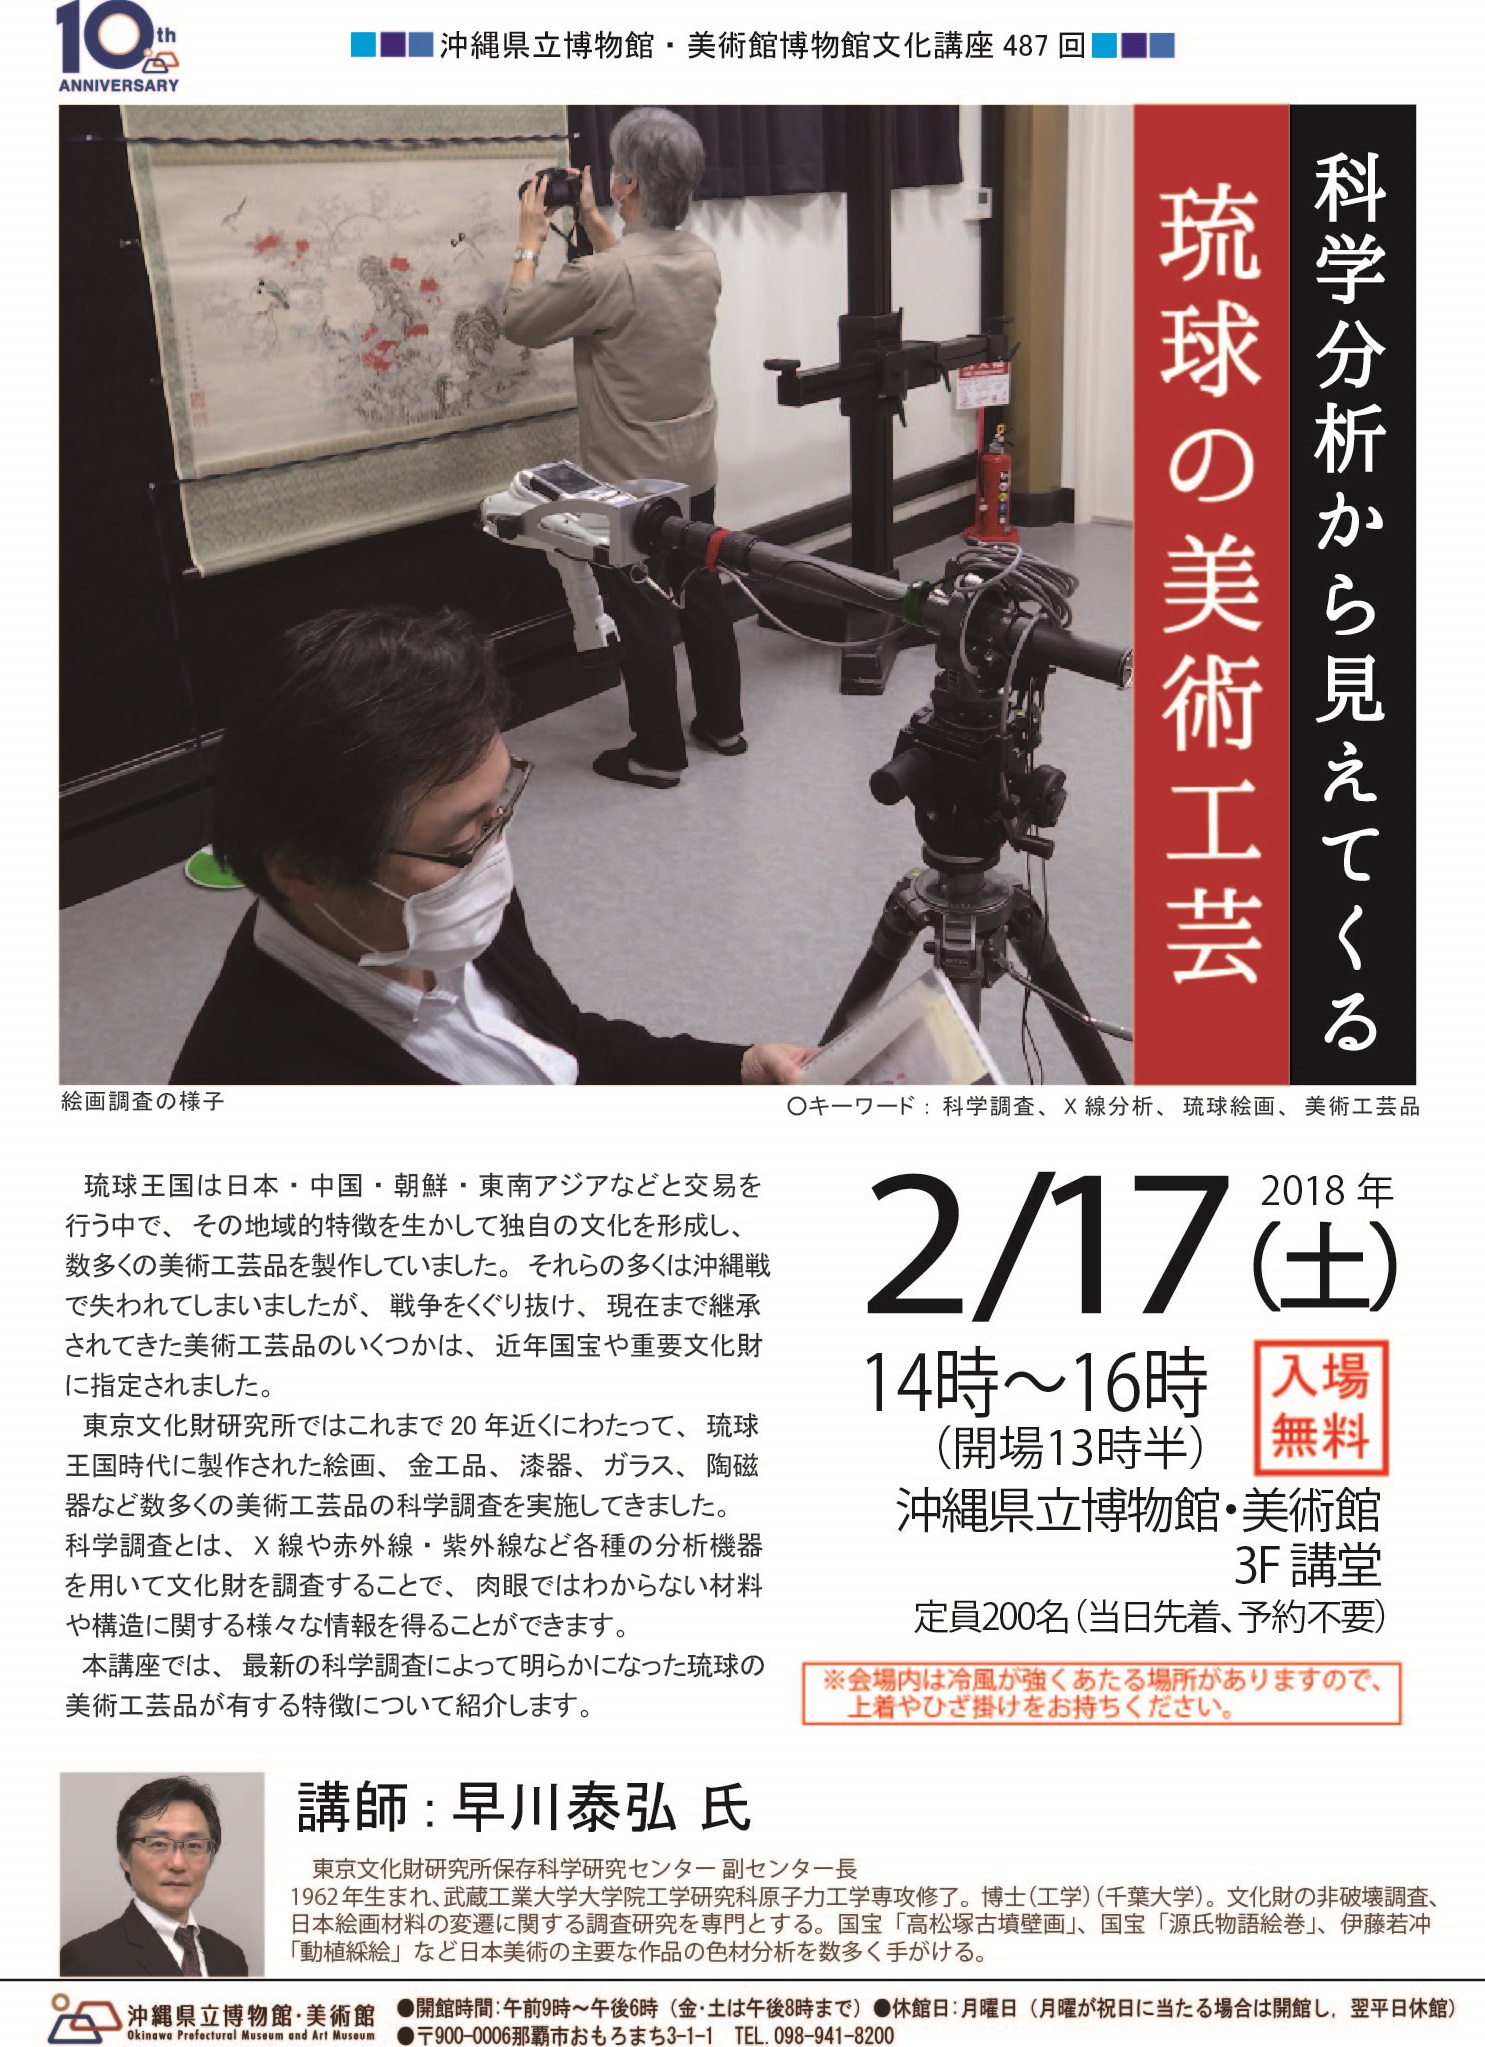 博物館文化講座「科学分析から見えてくる琉球の美術工芸」